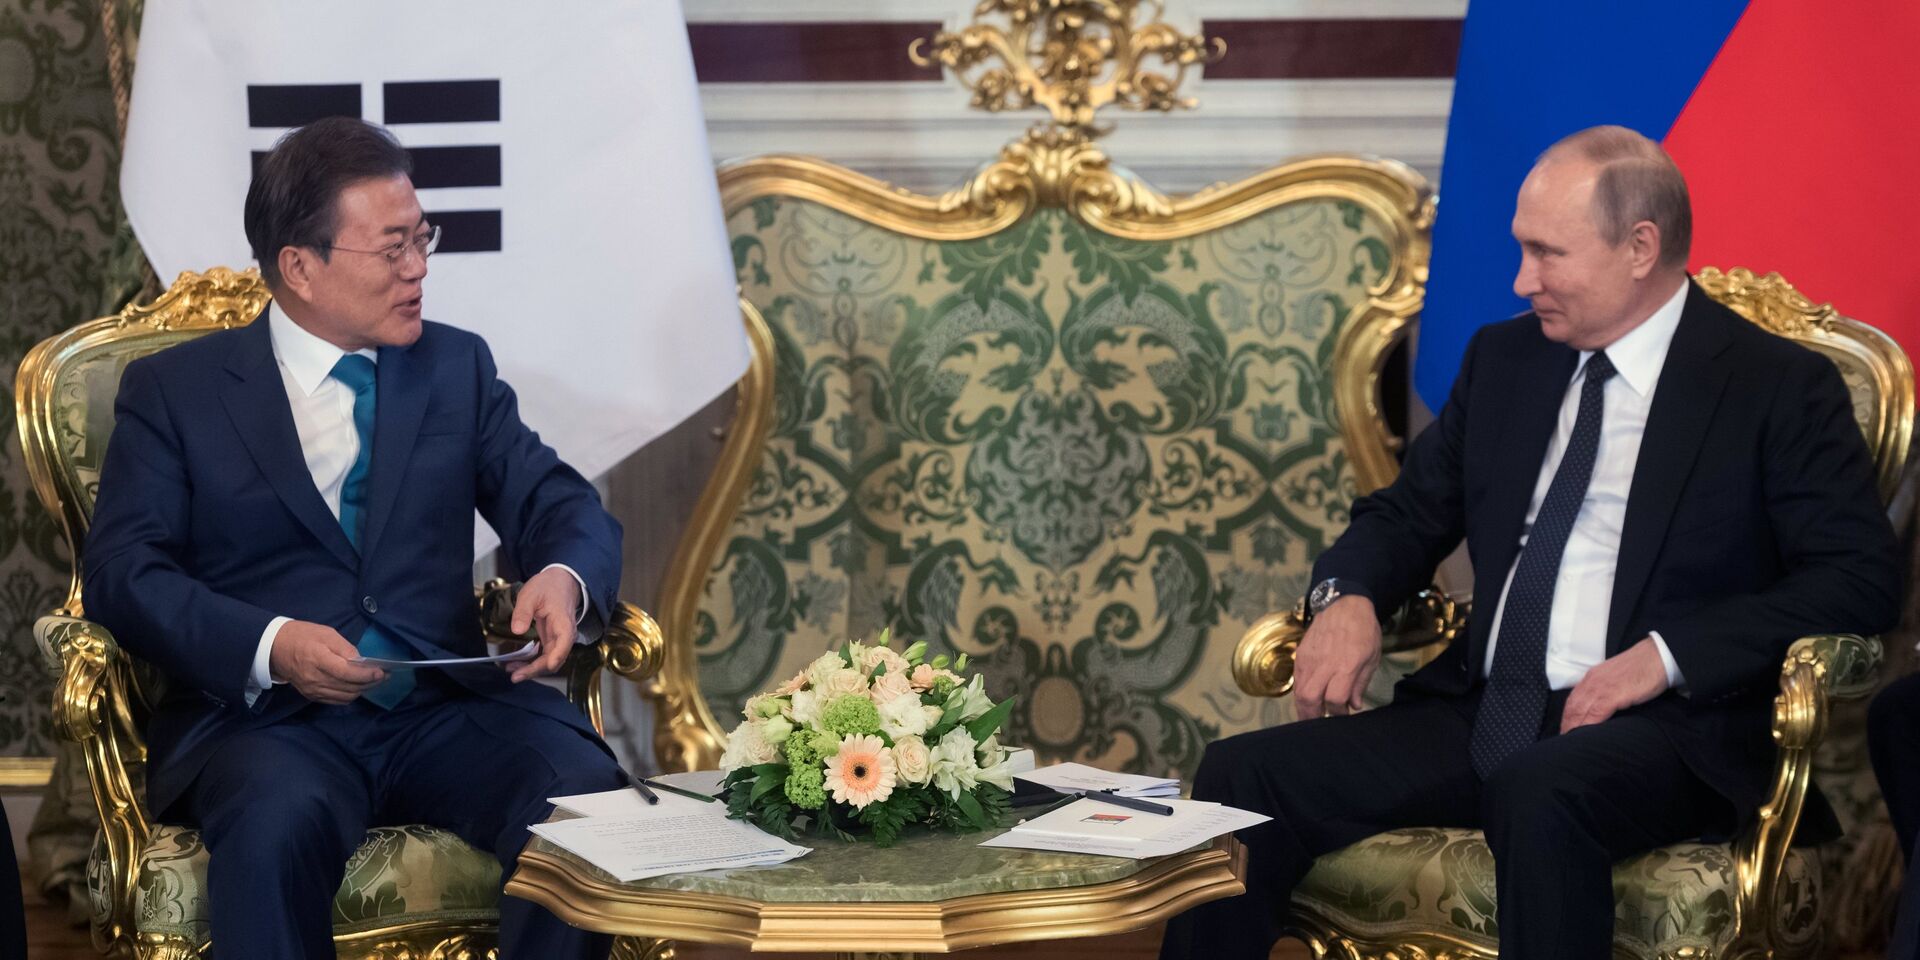 Владимир Путин и президент Республики Корея Мун Чжэ Ин во время встречи в Кремле. 22 июня 2018 - ИноСМИ, 1920, 23.04.2022